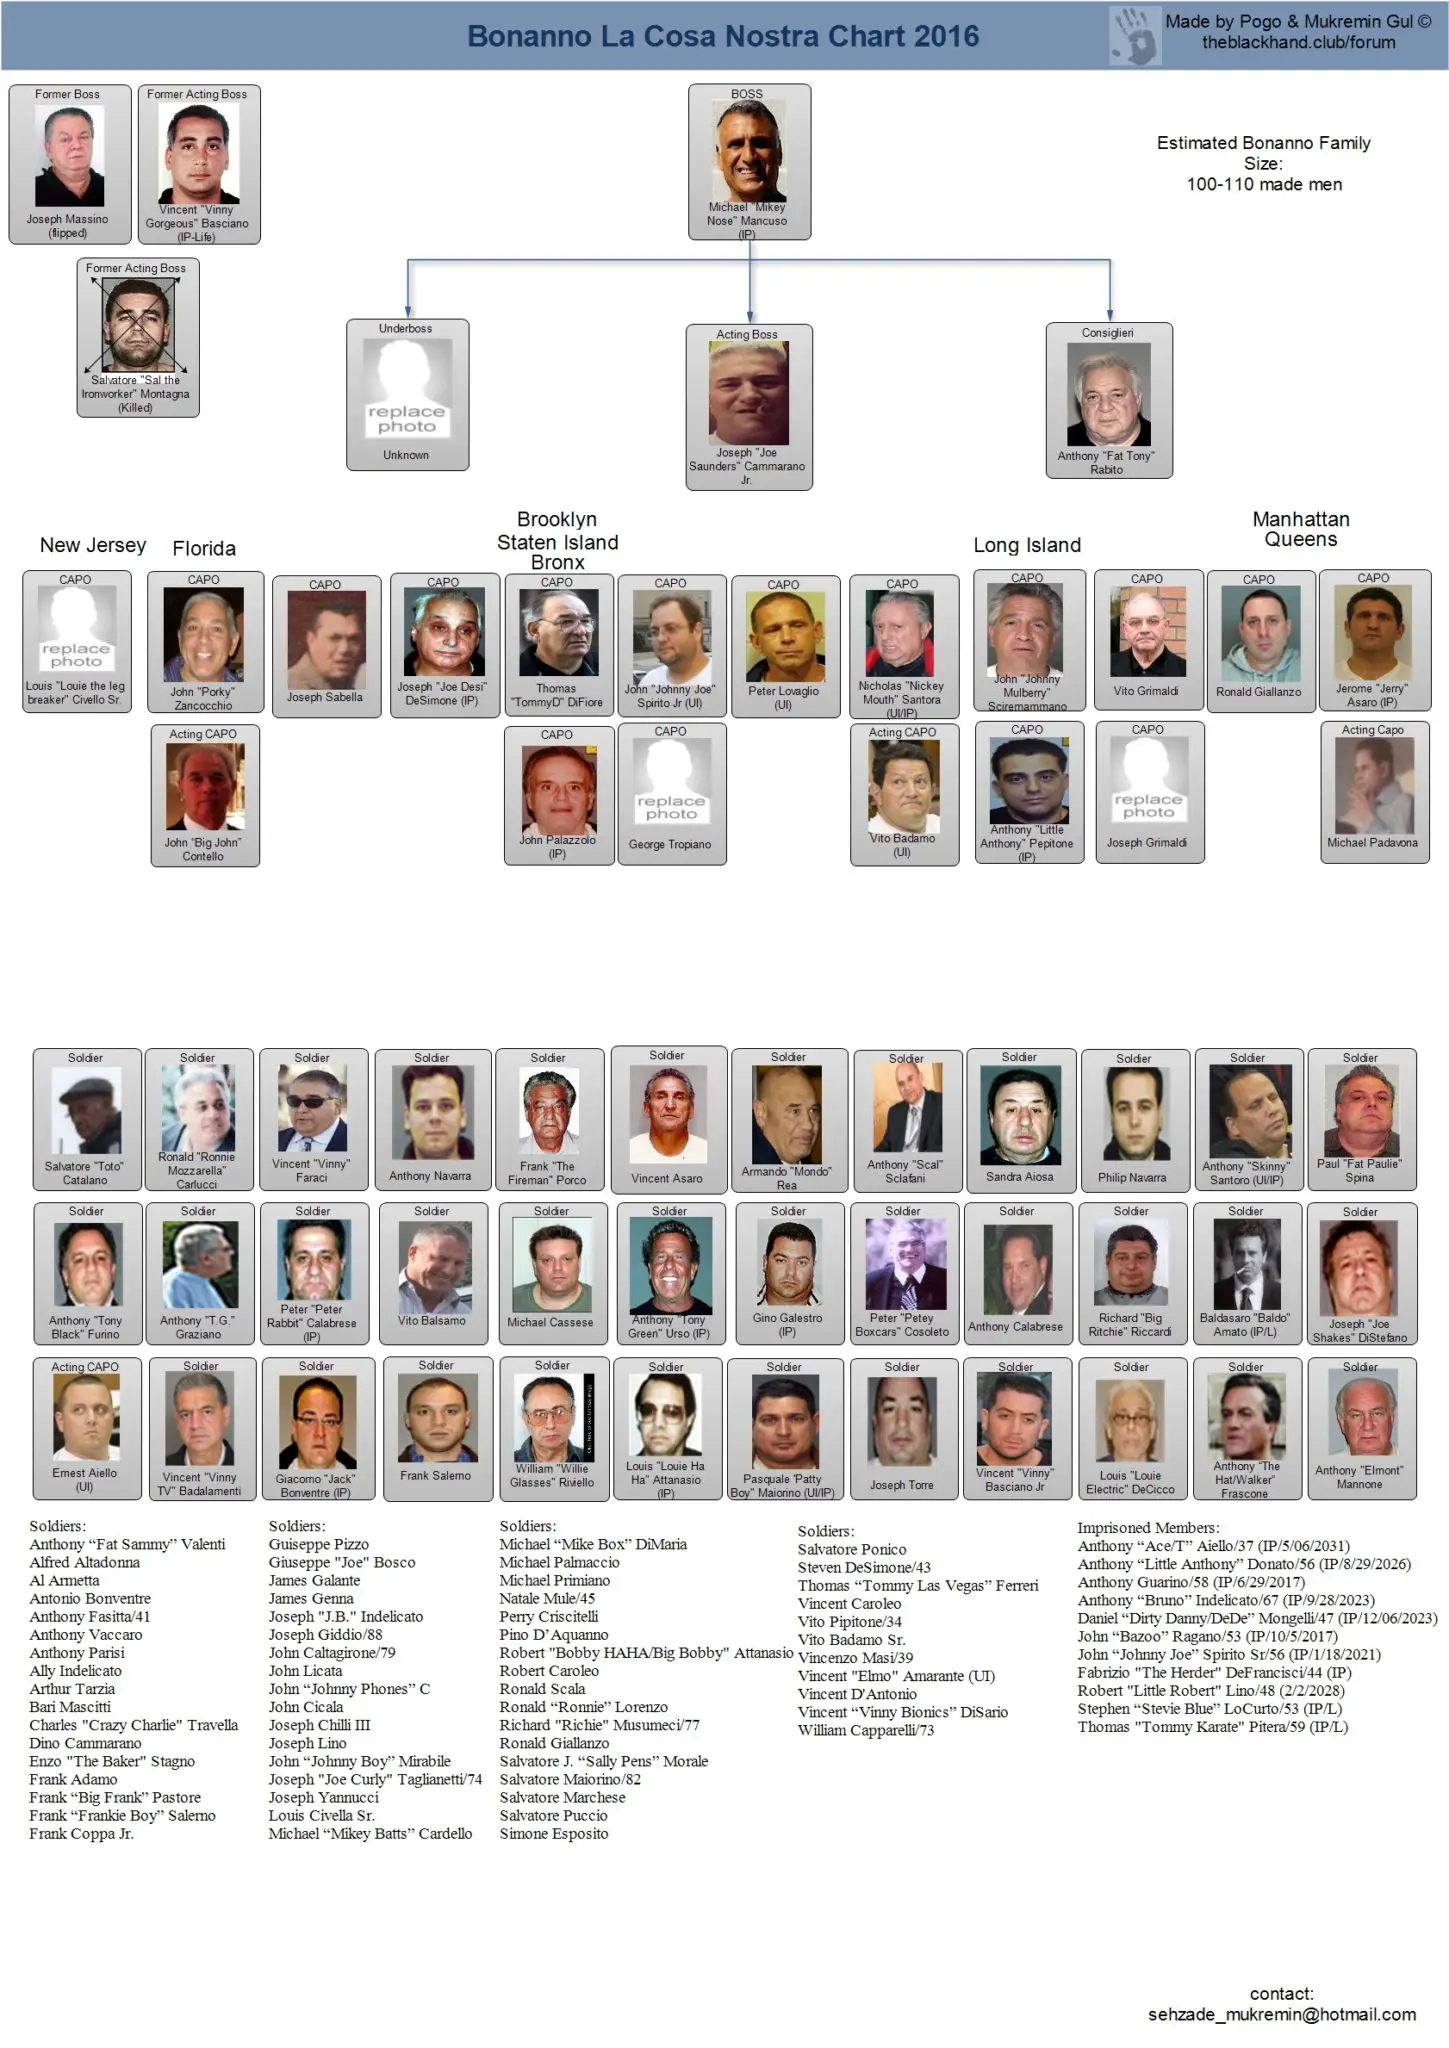 Gambino Crime Family Chart 2016